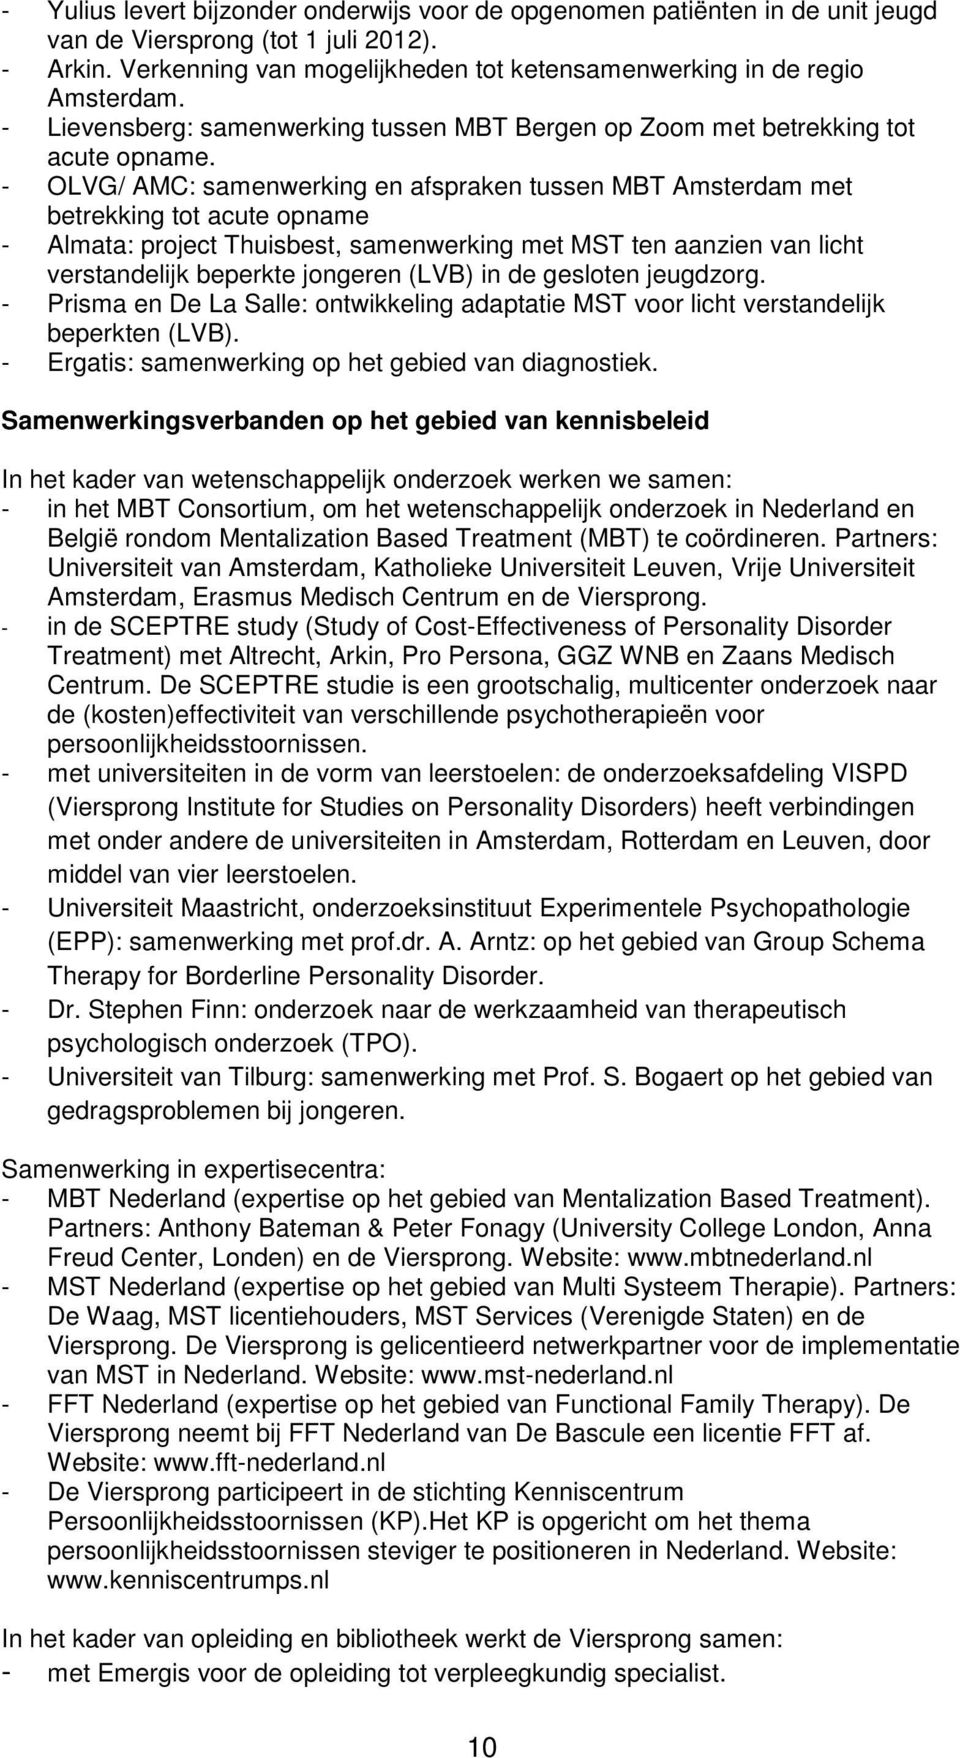 - OLVG/ AMC: samenwerking en afspraken tussen MBT Amsterdam met betrekking tot acute opname - Almata: project Thuisbest, samenwerking met MST ten aanzien van licht verstandelijk beperkte jongeren